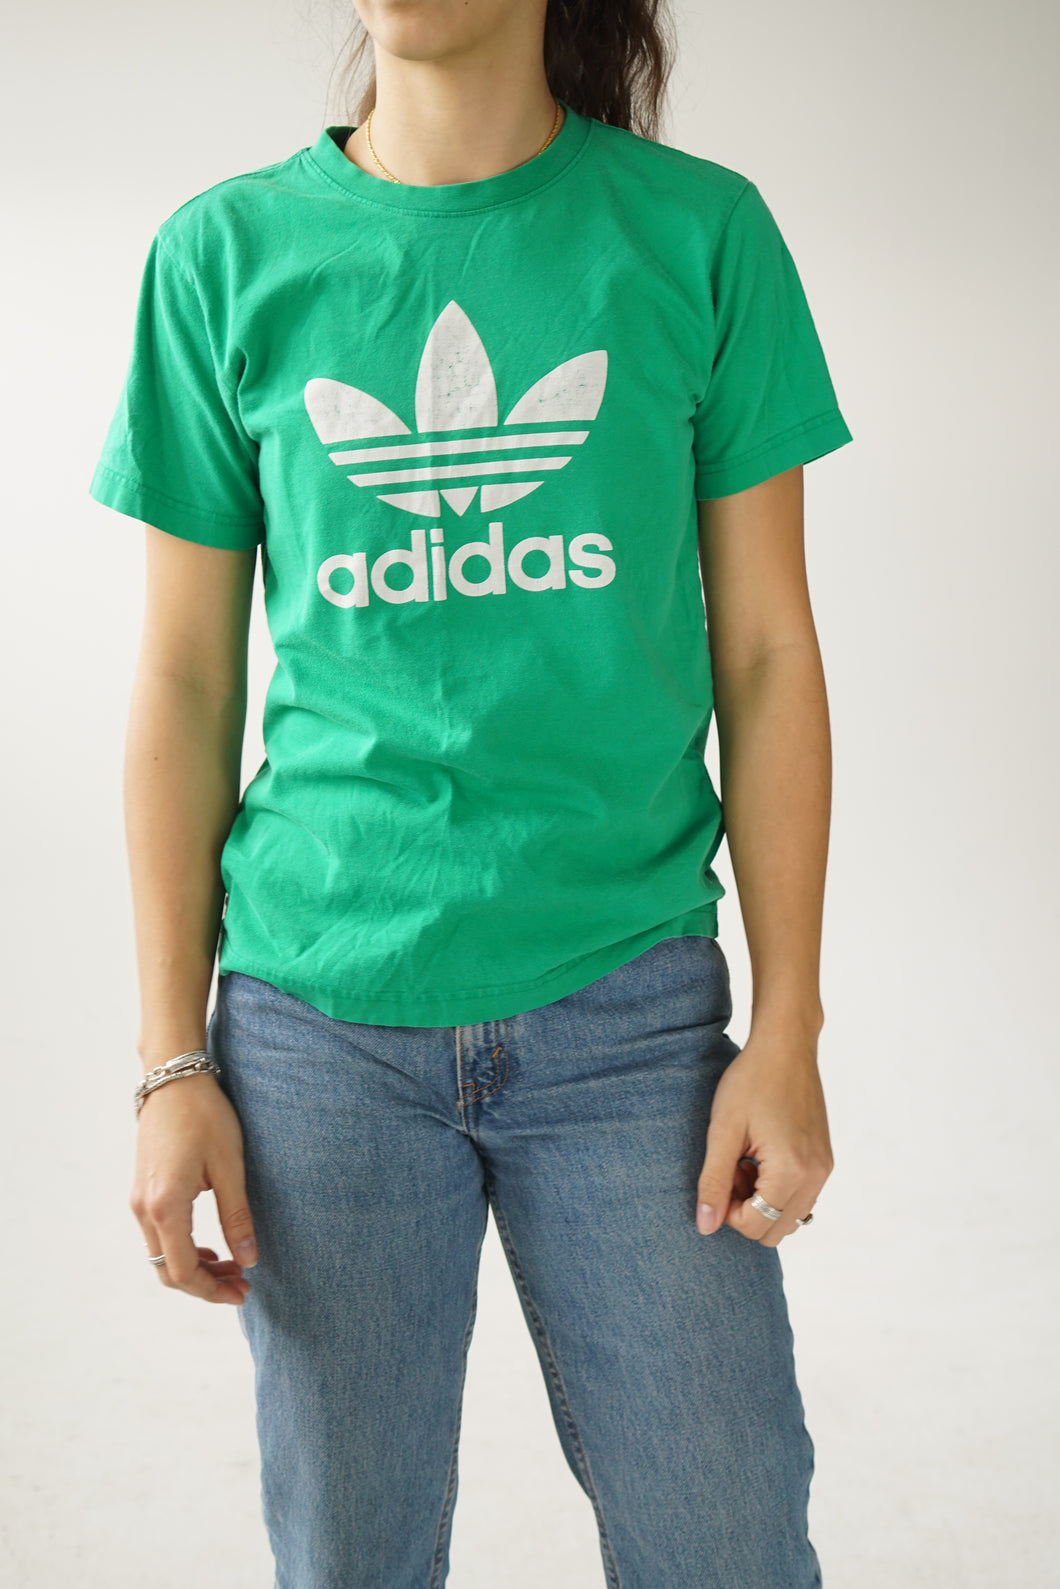 Tee shirt Adidas vert taille S